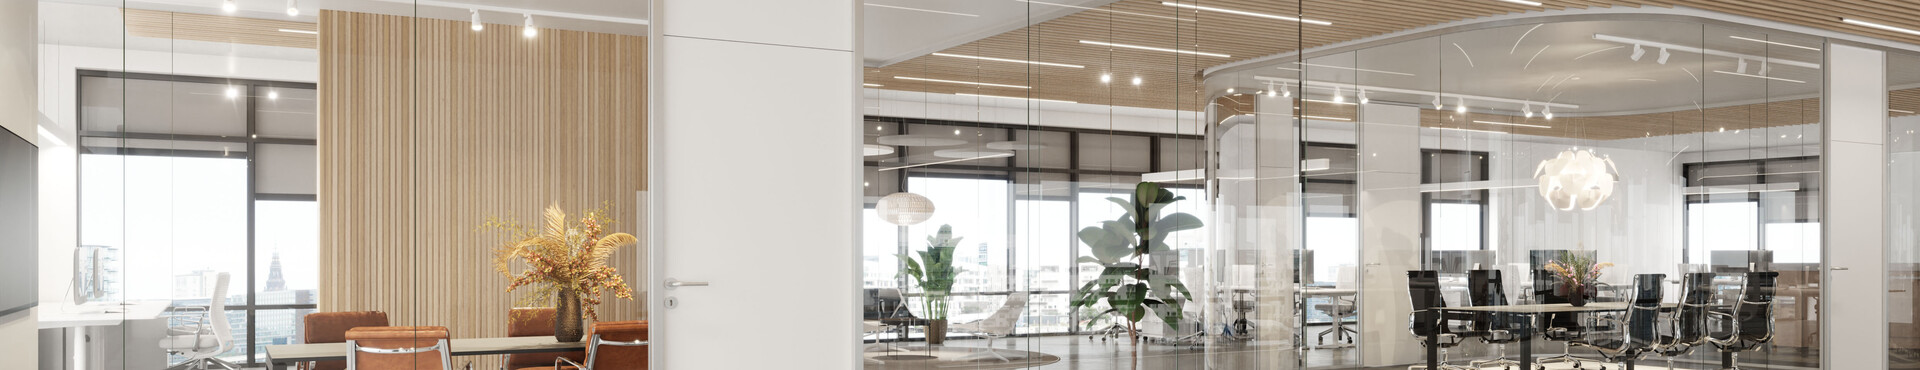 Glasvægge i et stort, lyst og moderne kontormiljø